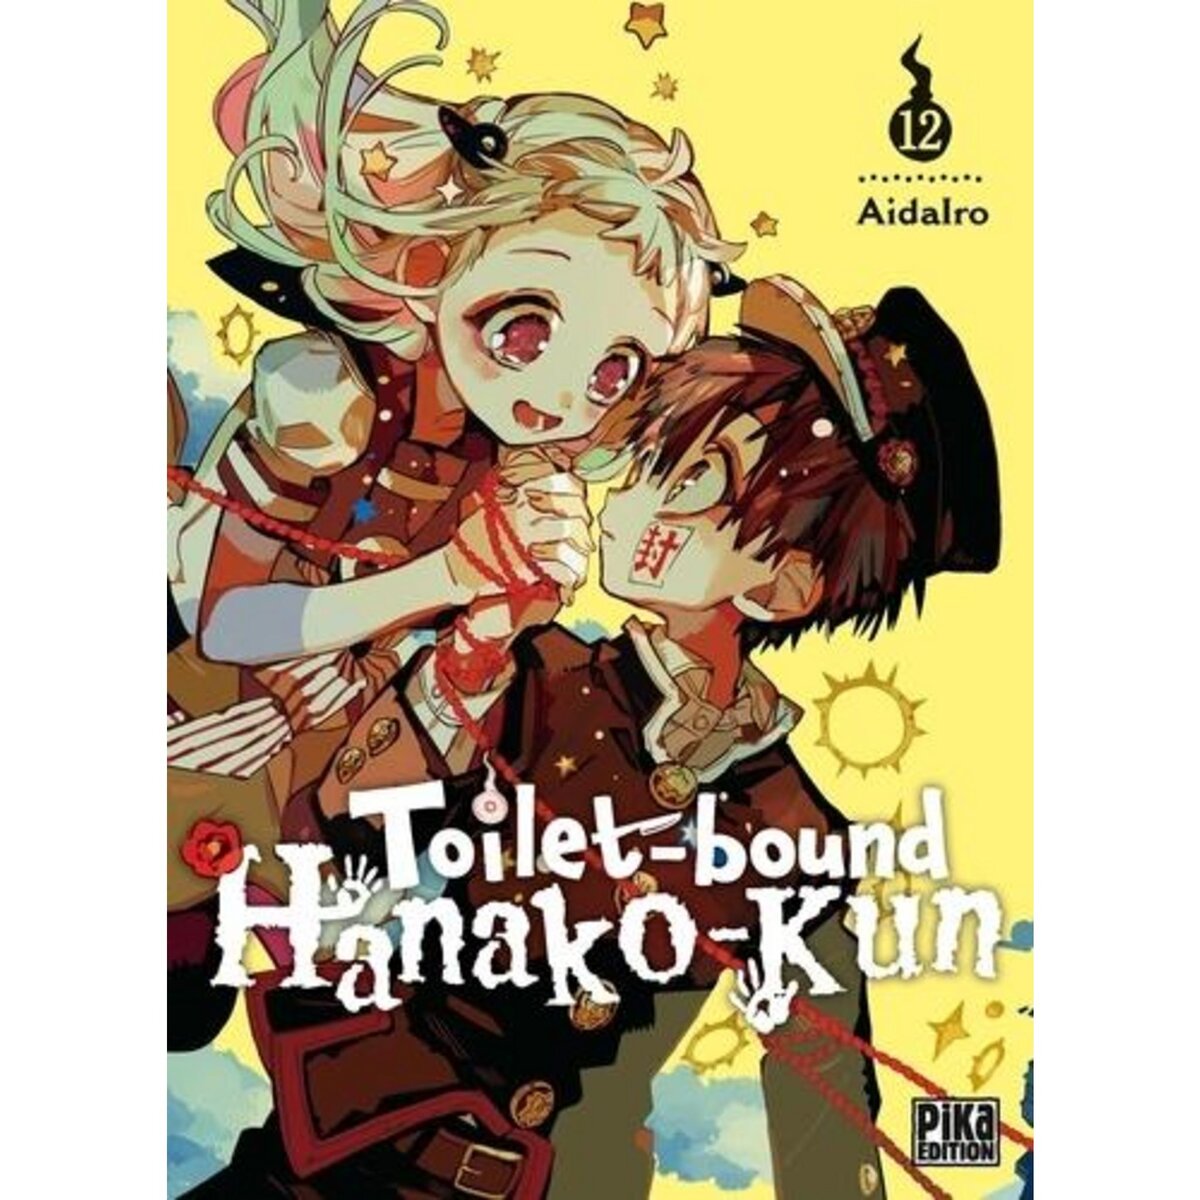  TOILET-BOUND HANAKO-KUN TOME 12 , AidaIro